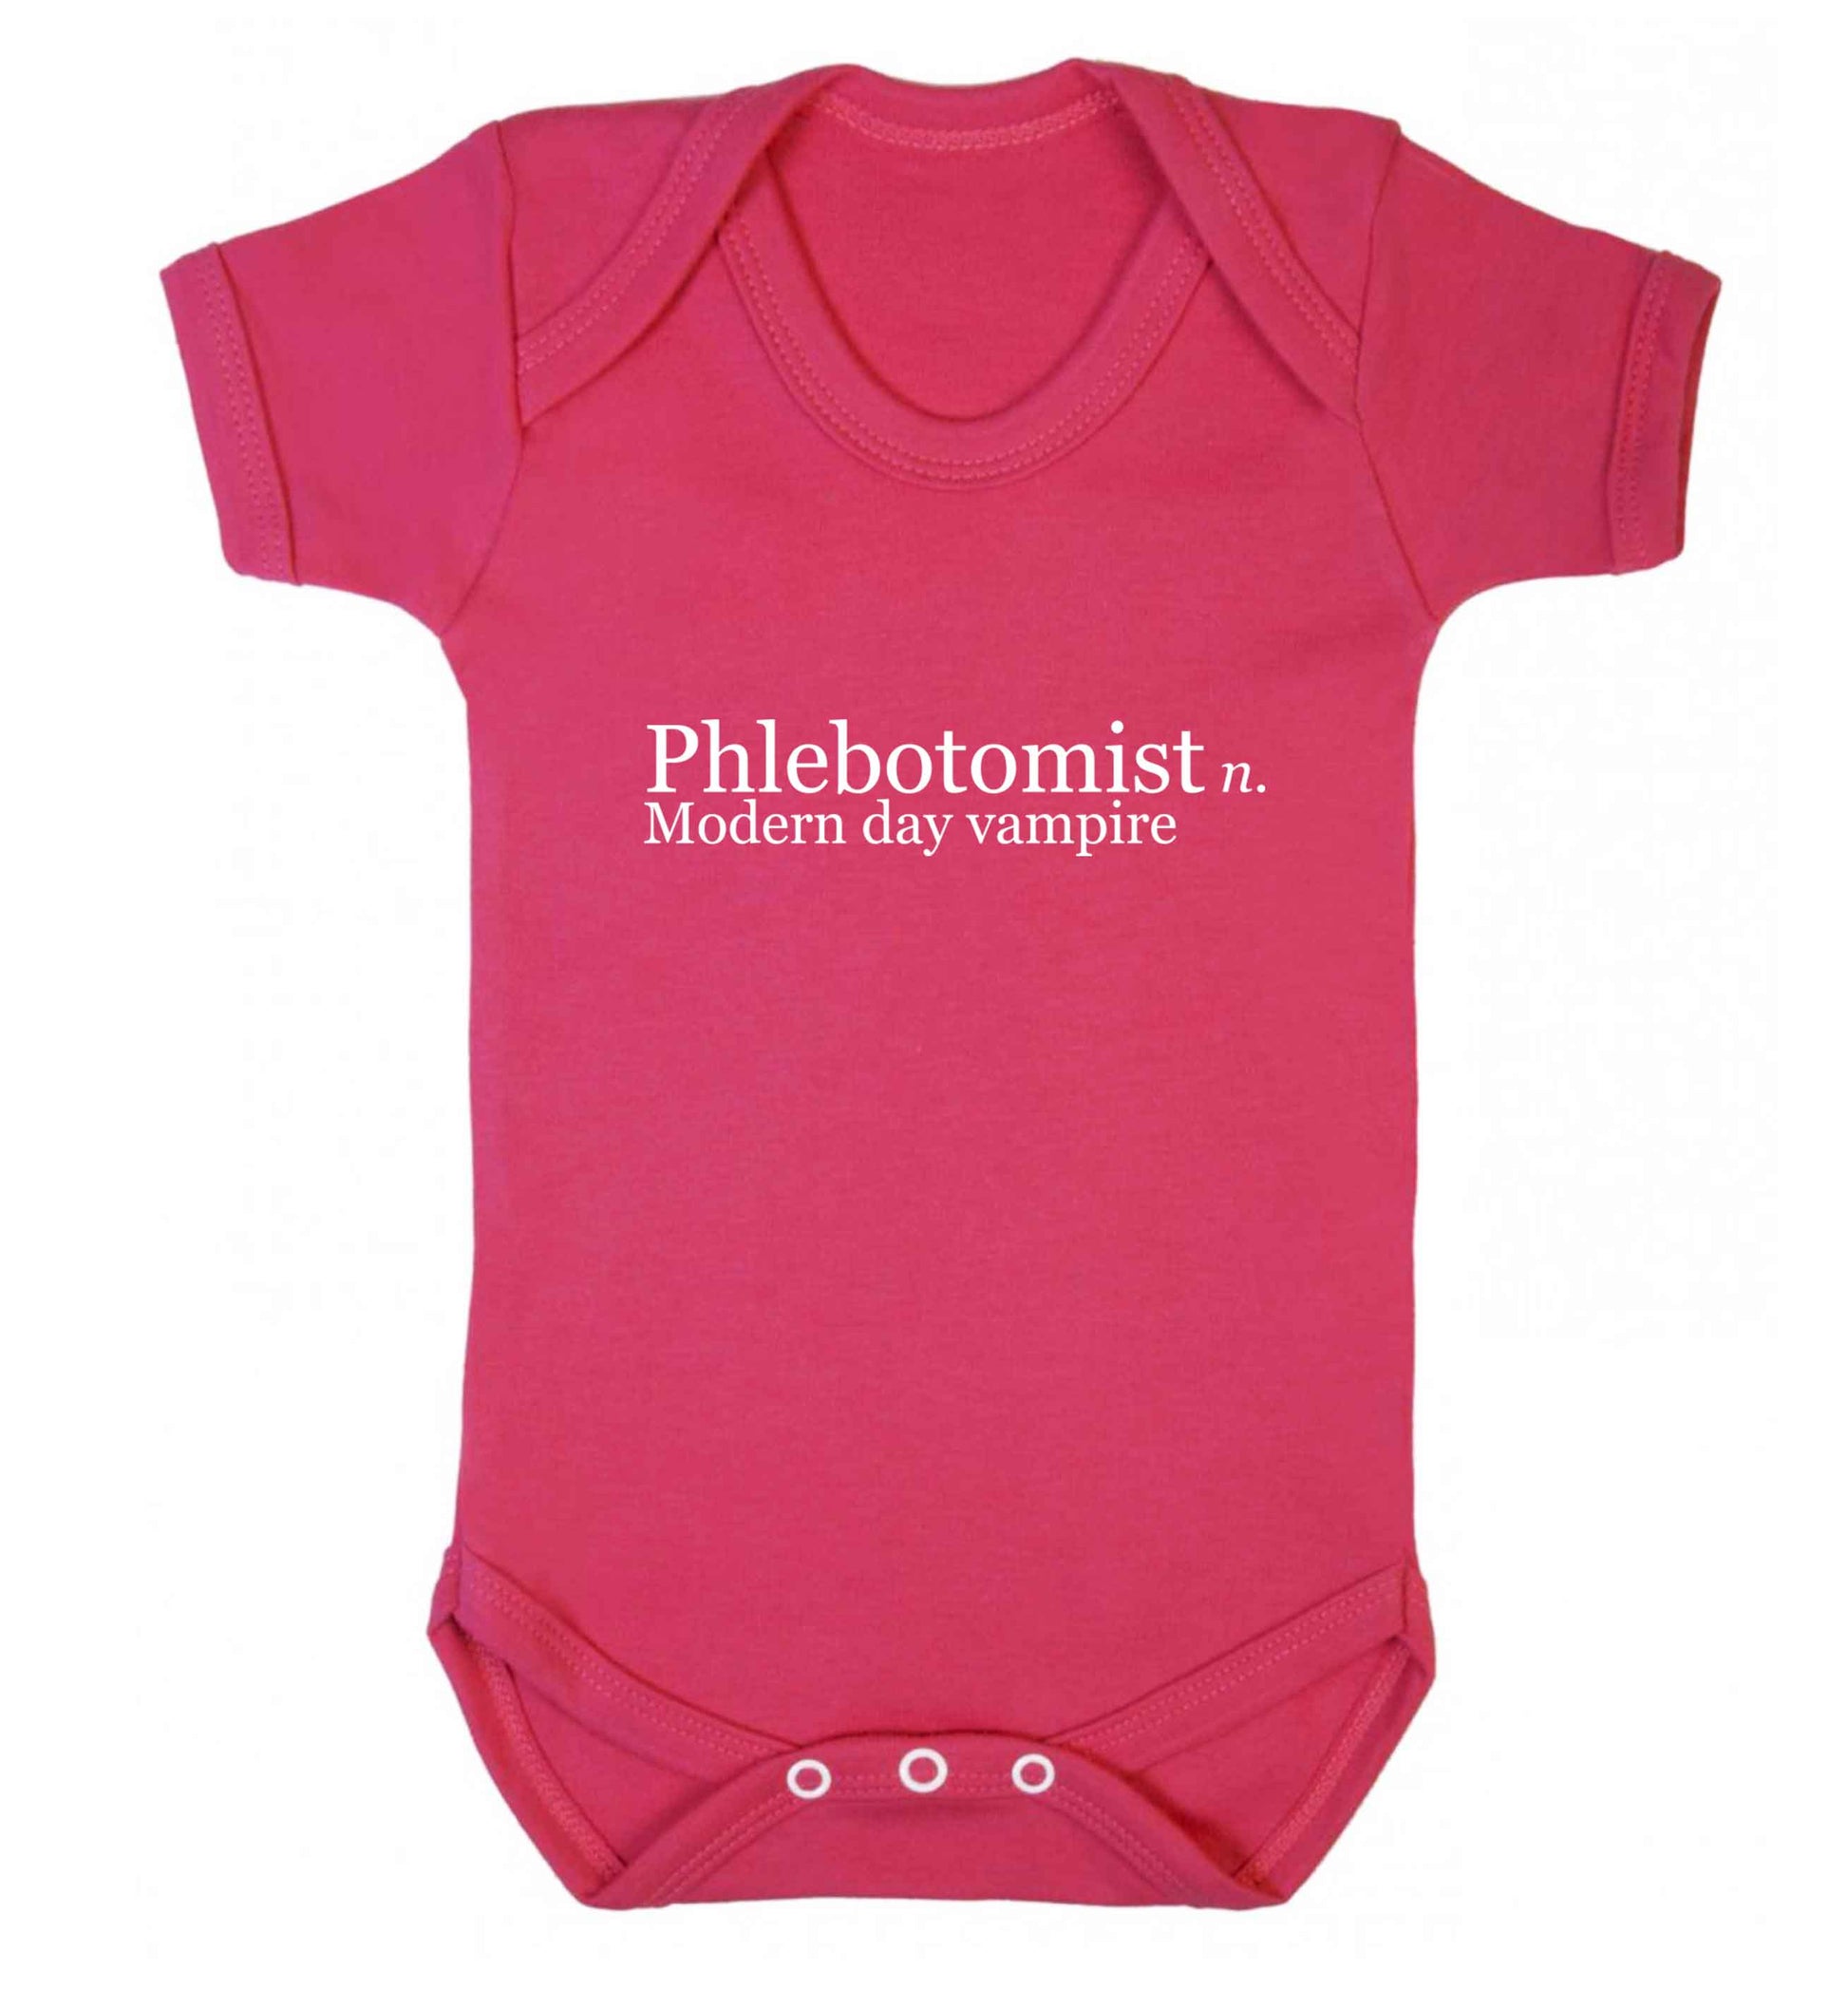 Phlebotomist - Modern day vampire baby vest dark pink 18-24 months